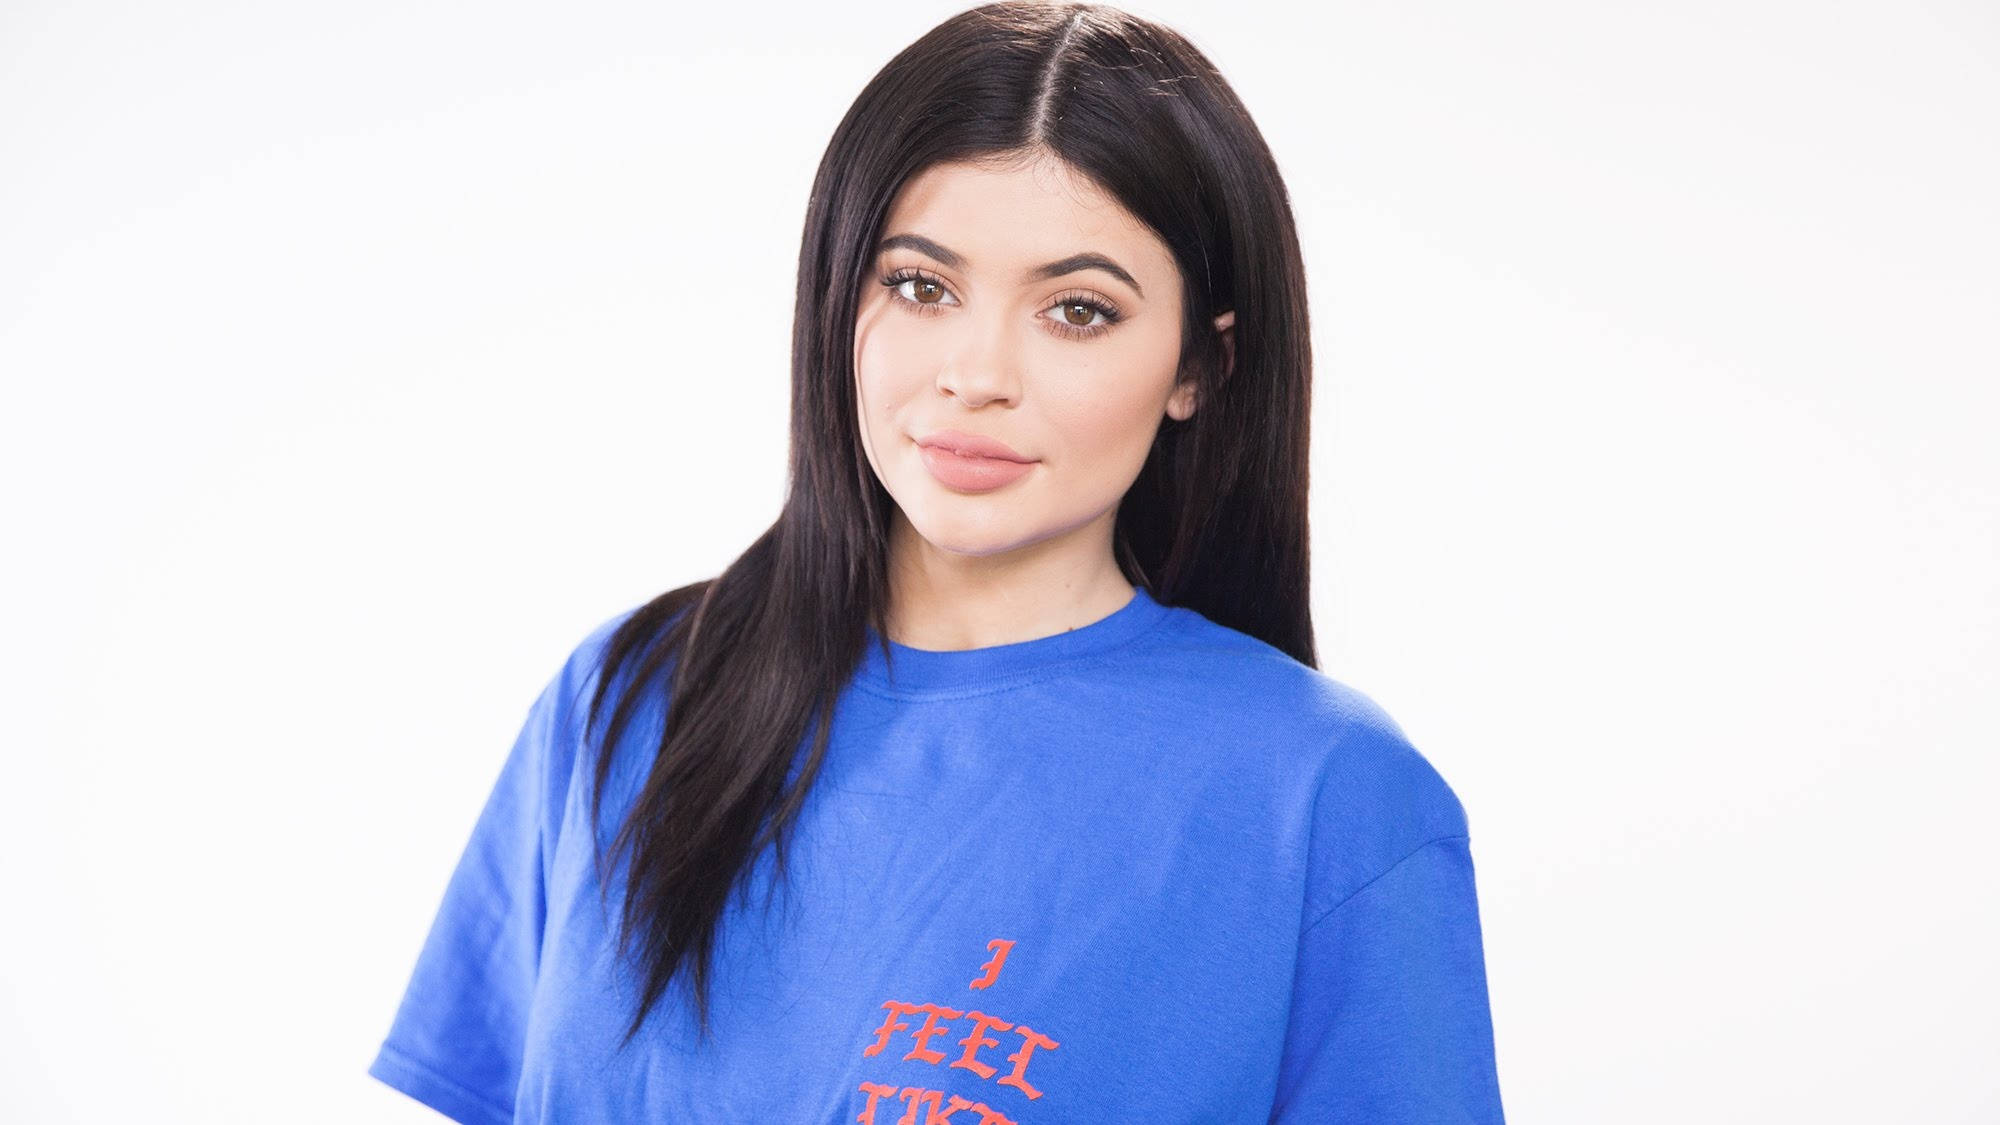 Kylie Jenner Wearing Blue Shirt Wallpaper - wallpapersok